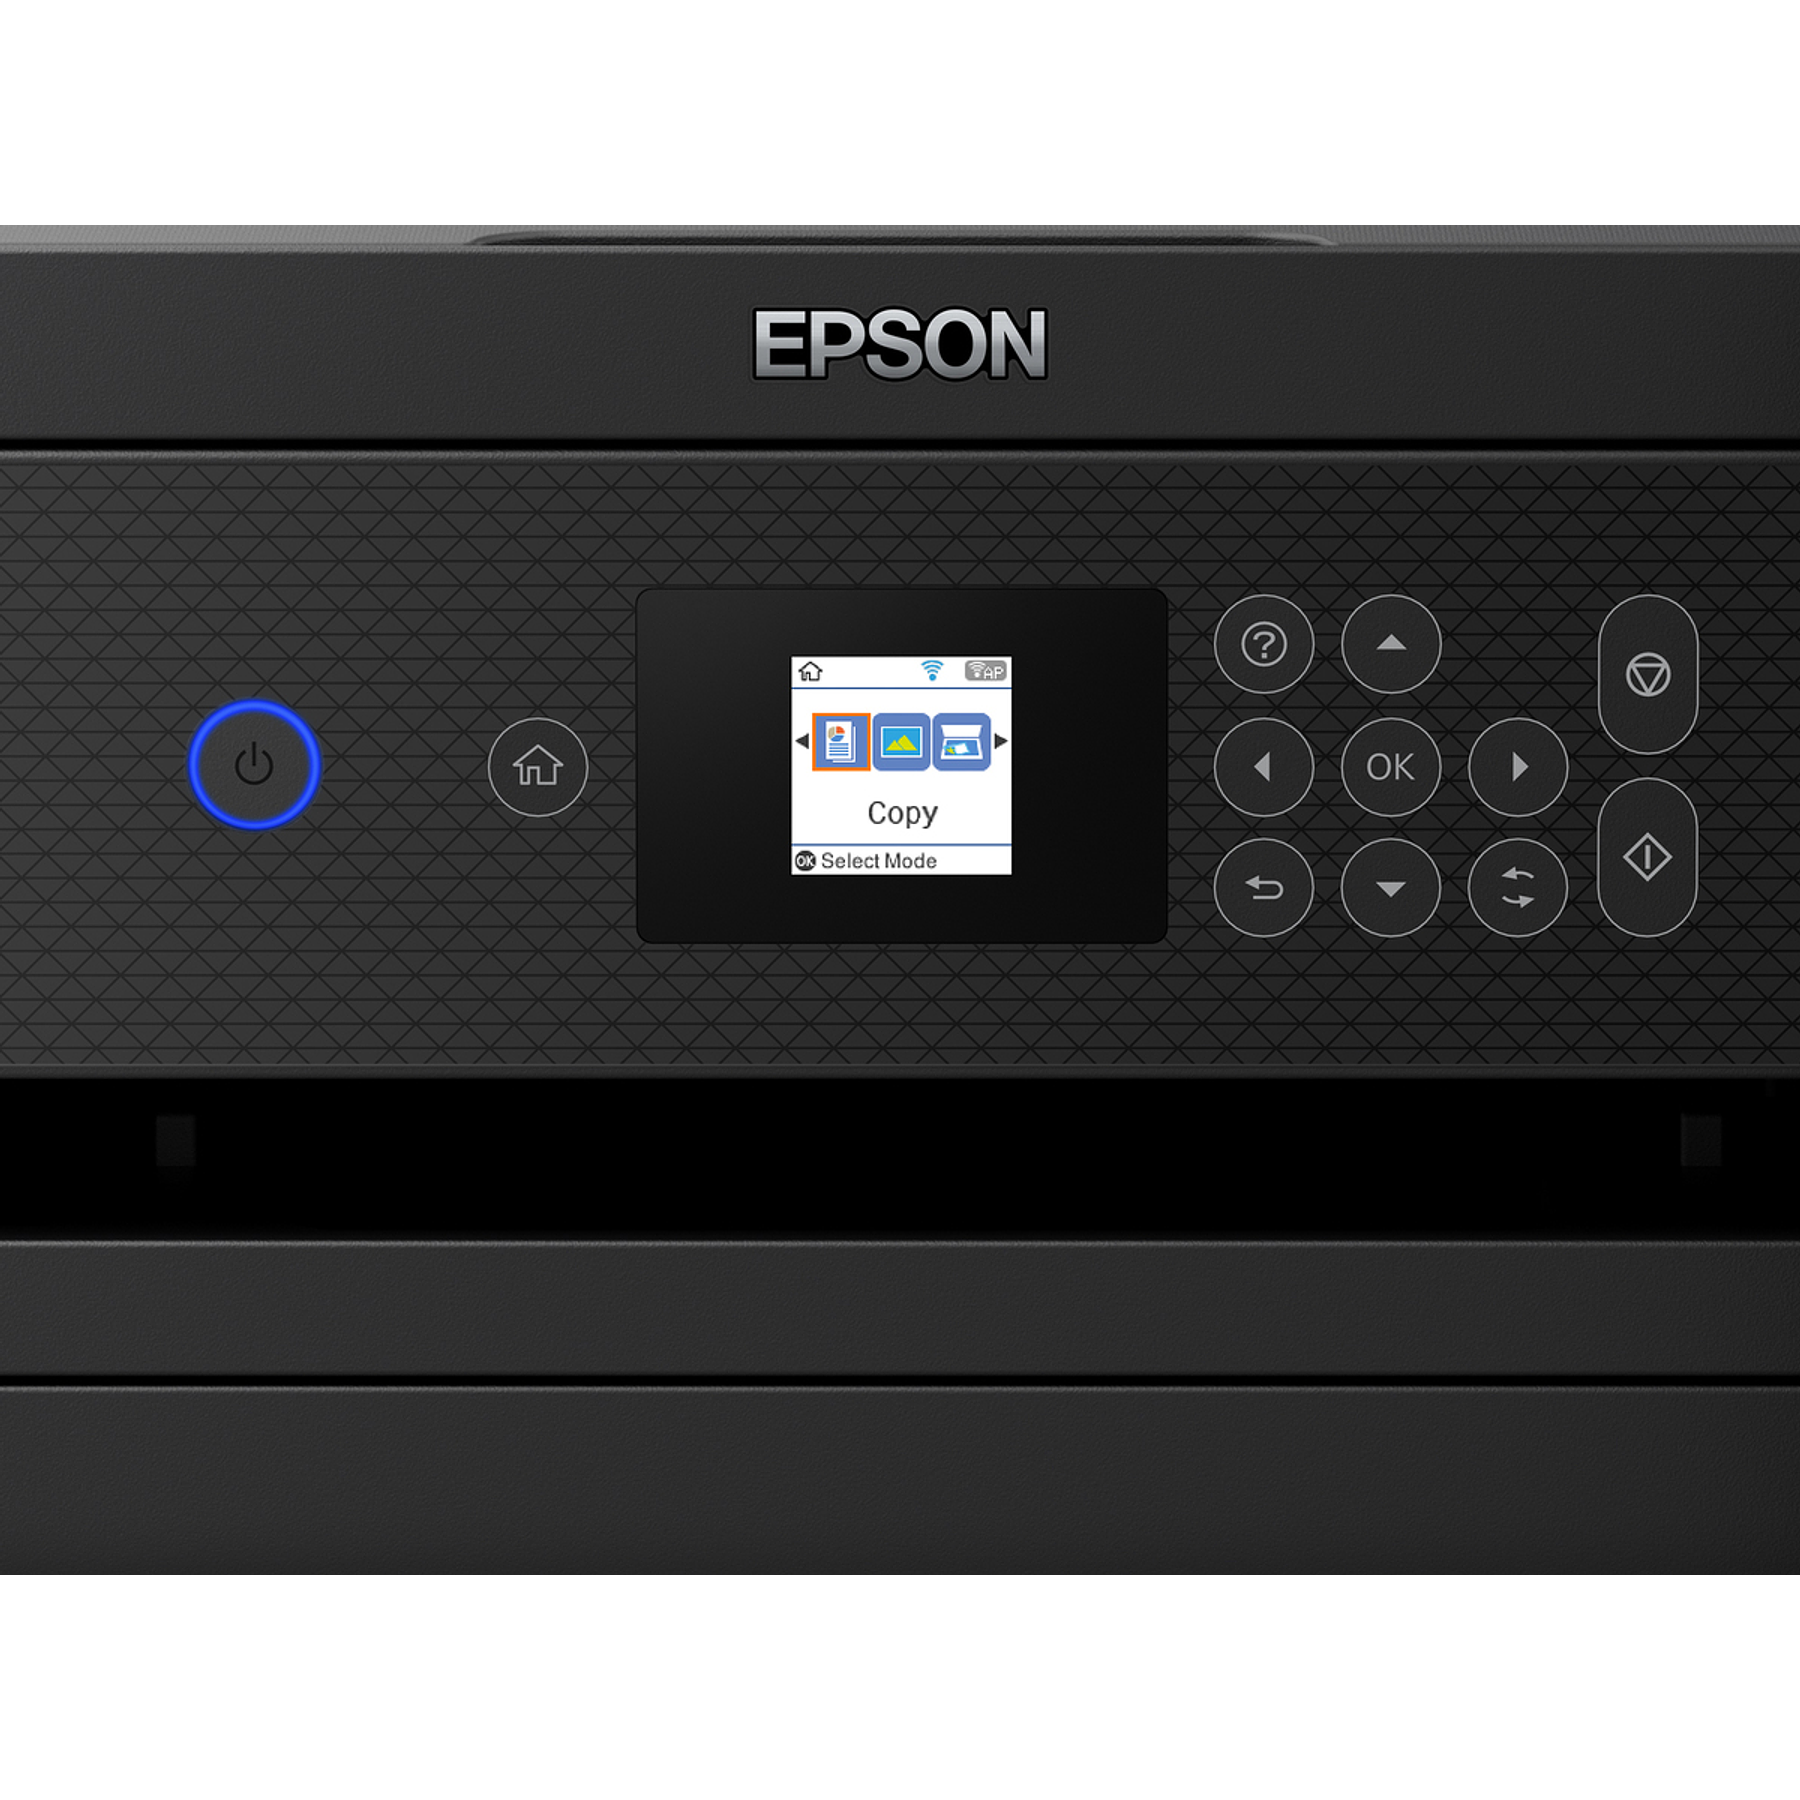 Epson EcoTank L4260 Impresora Multifunción Color